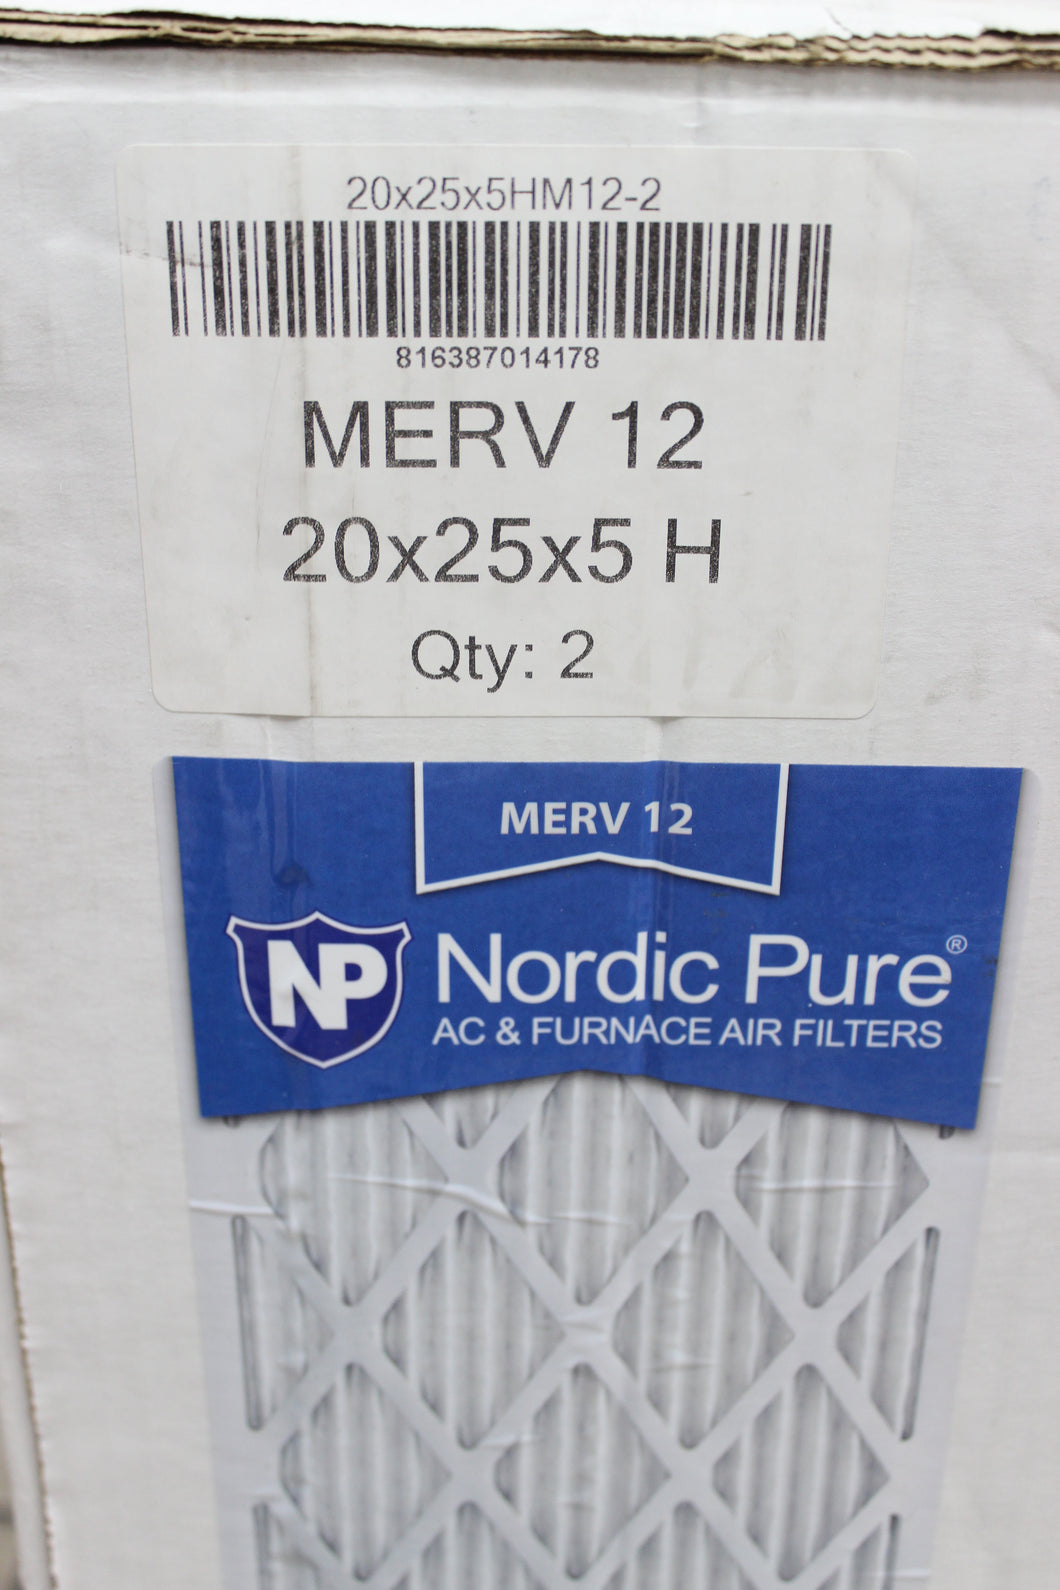 20x25x5HM12-2 - Nordic Pure